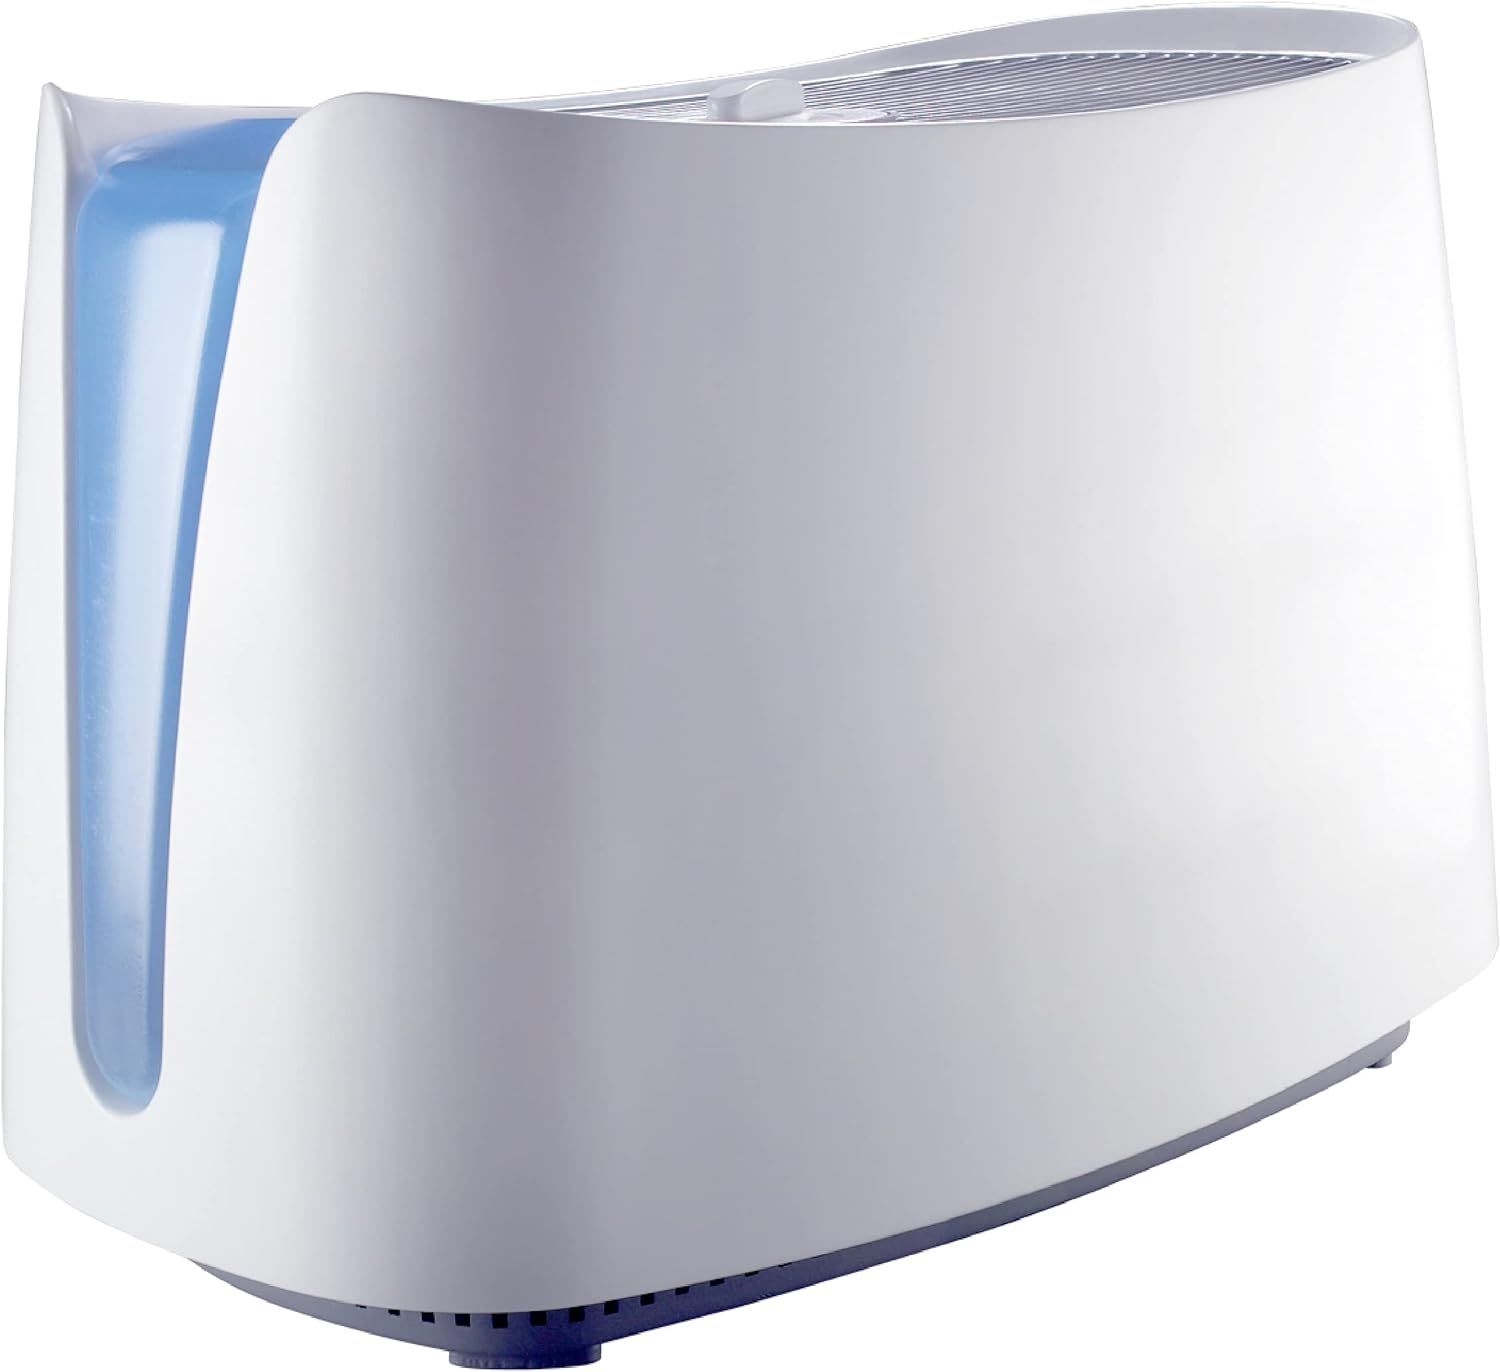 Honeywell Cool Moisture Humidifier, Medium Room, 1 Gallon Tank, White – Invisible Moisture Humi... | Amazon (US)